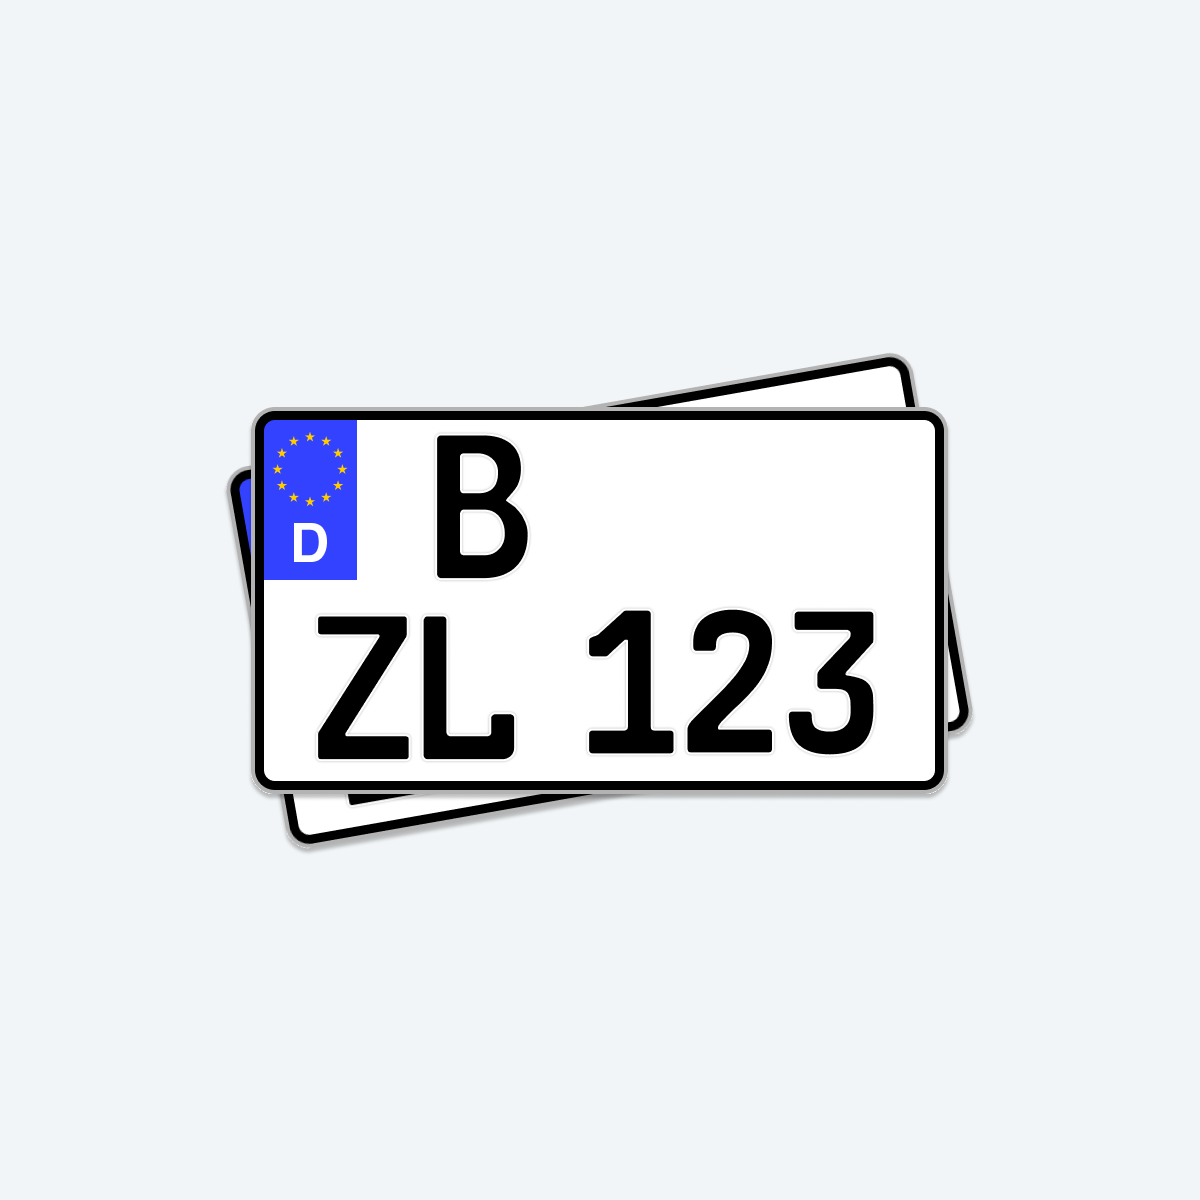 1 Autokennzeichen, 520x110, Kfz Kennzeichen